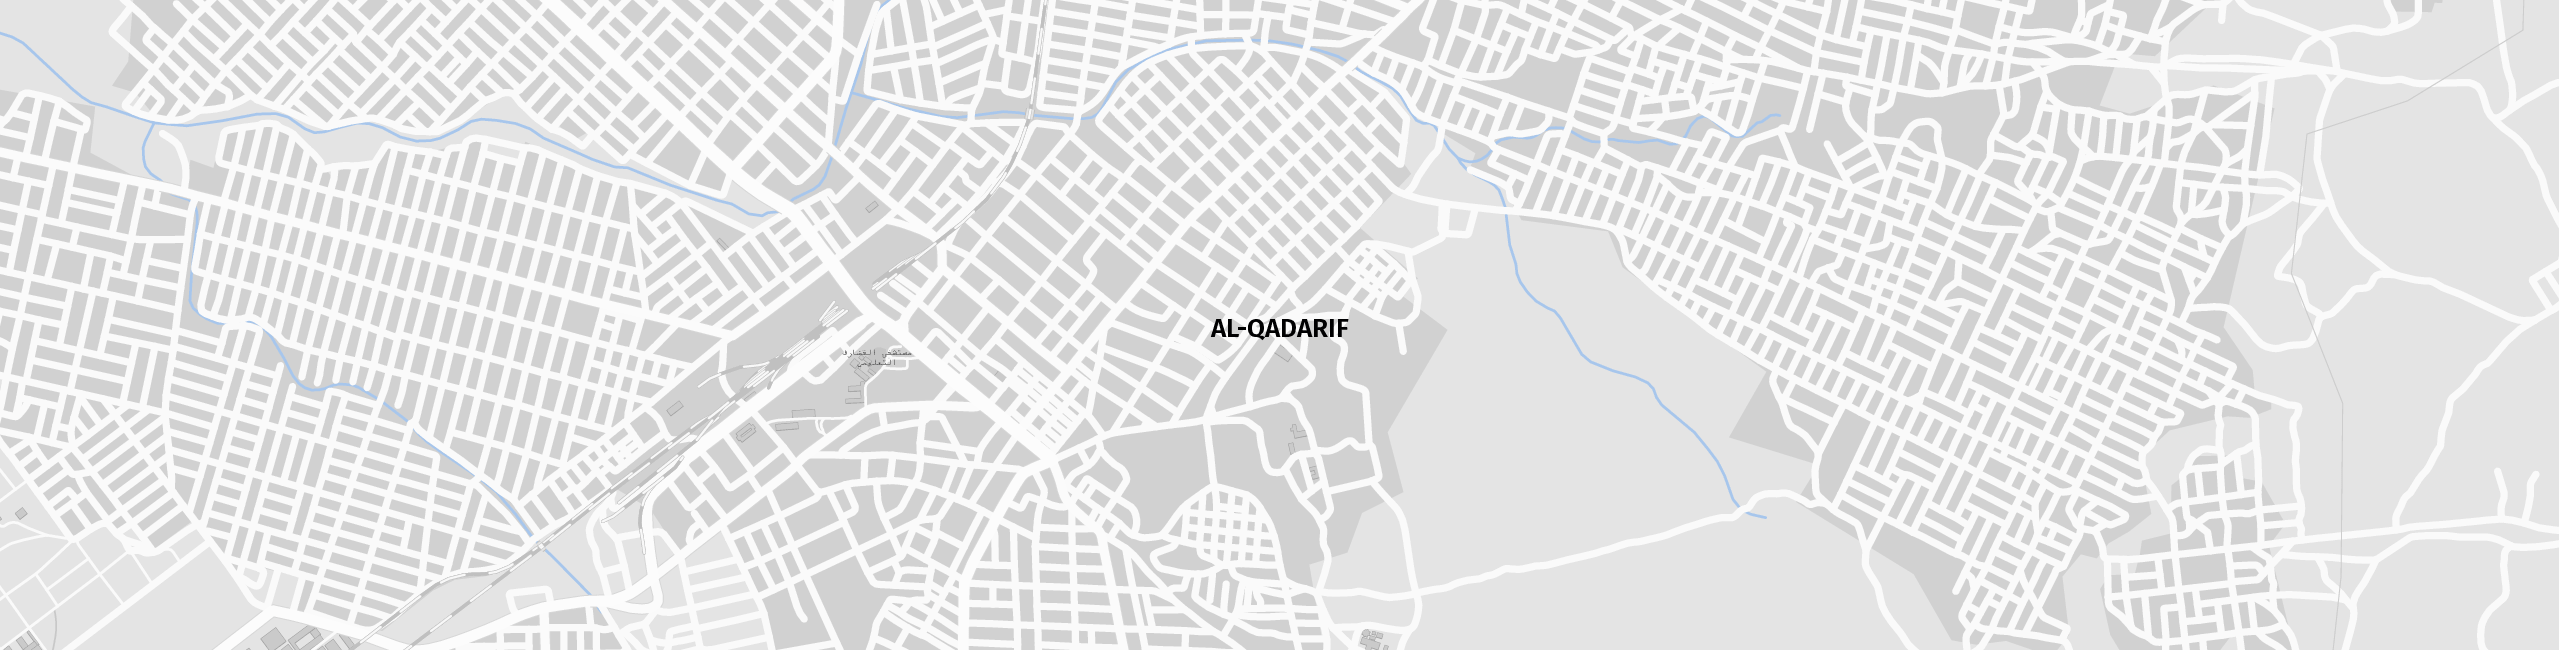 Stadtplan Al-Qadarif zum Downloaden.